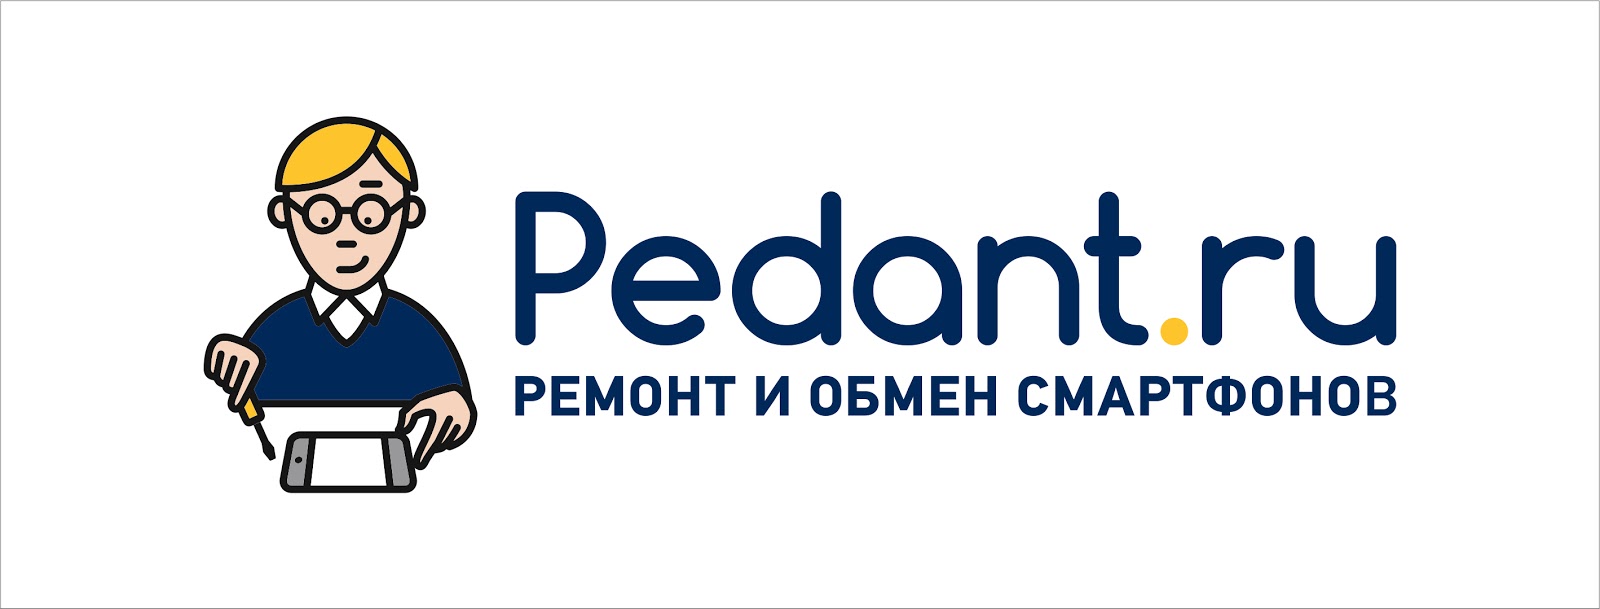 Pedant.ru (ИП Малахов ВВ)